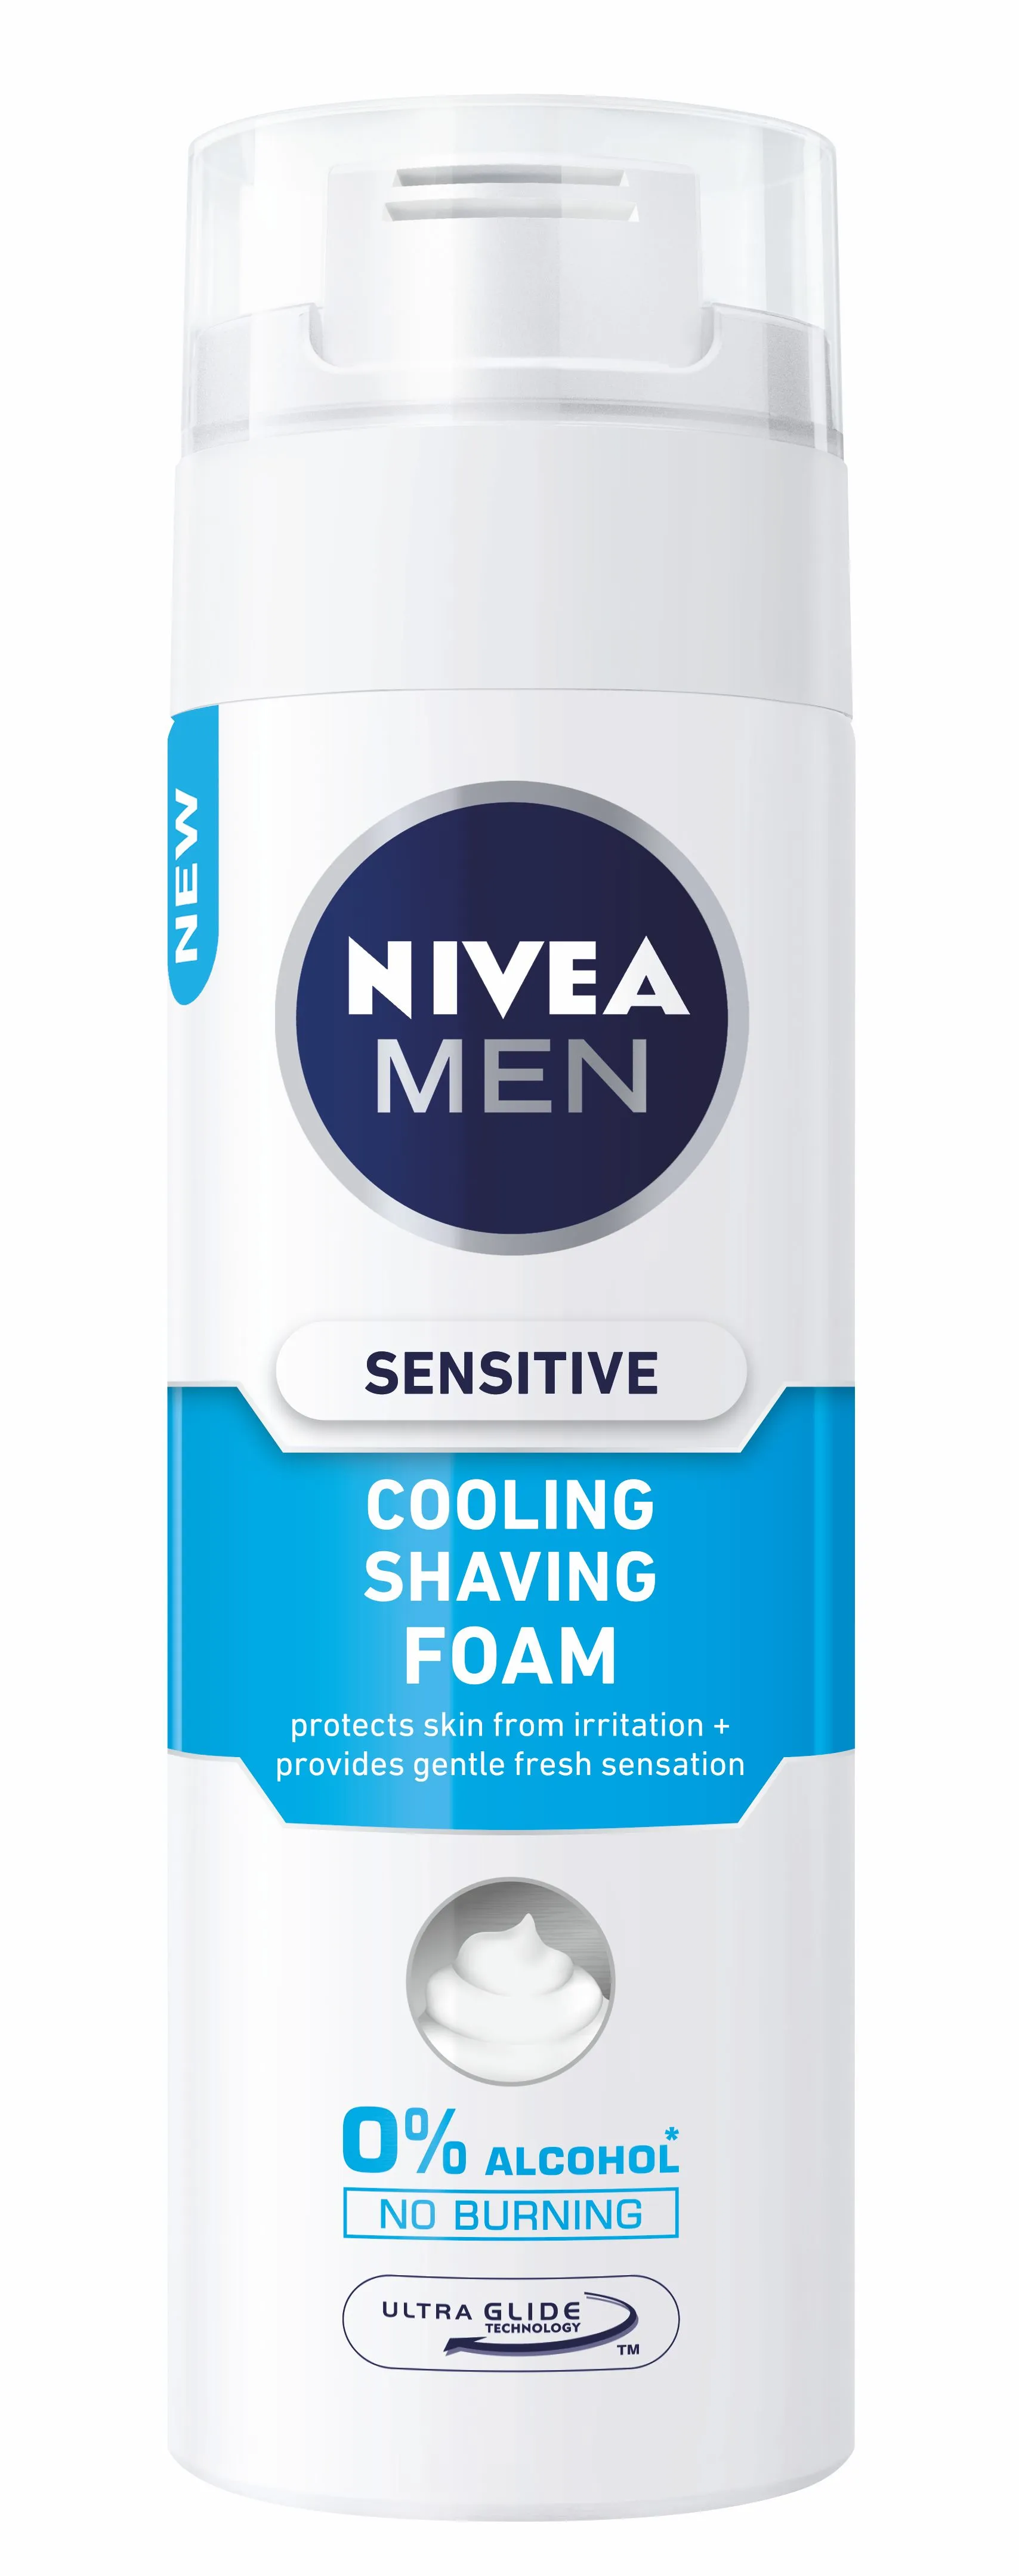 Nivea Men Sensitive Cool pěna na holení pro muže 200 ml